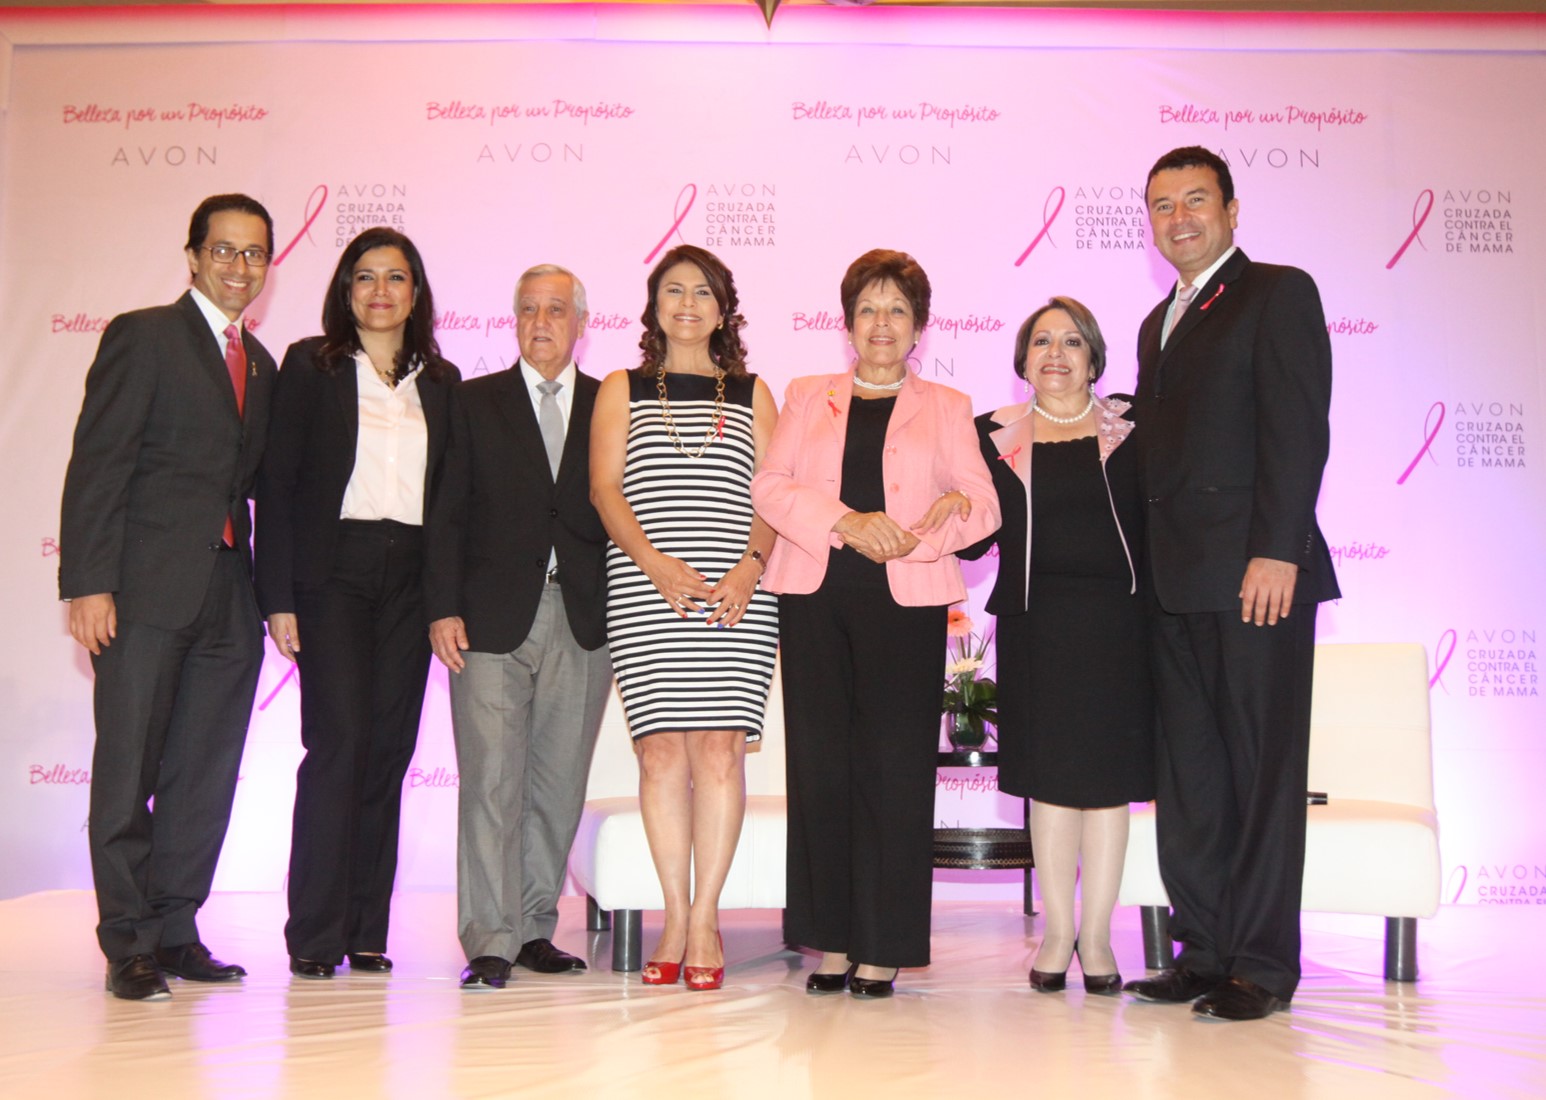 Avon presenta la Cruzada Avon contra el cáncer de mama en Guatemala